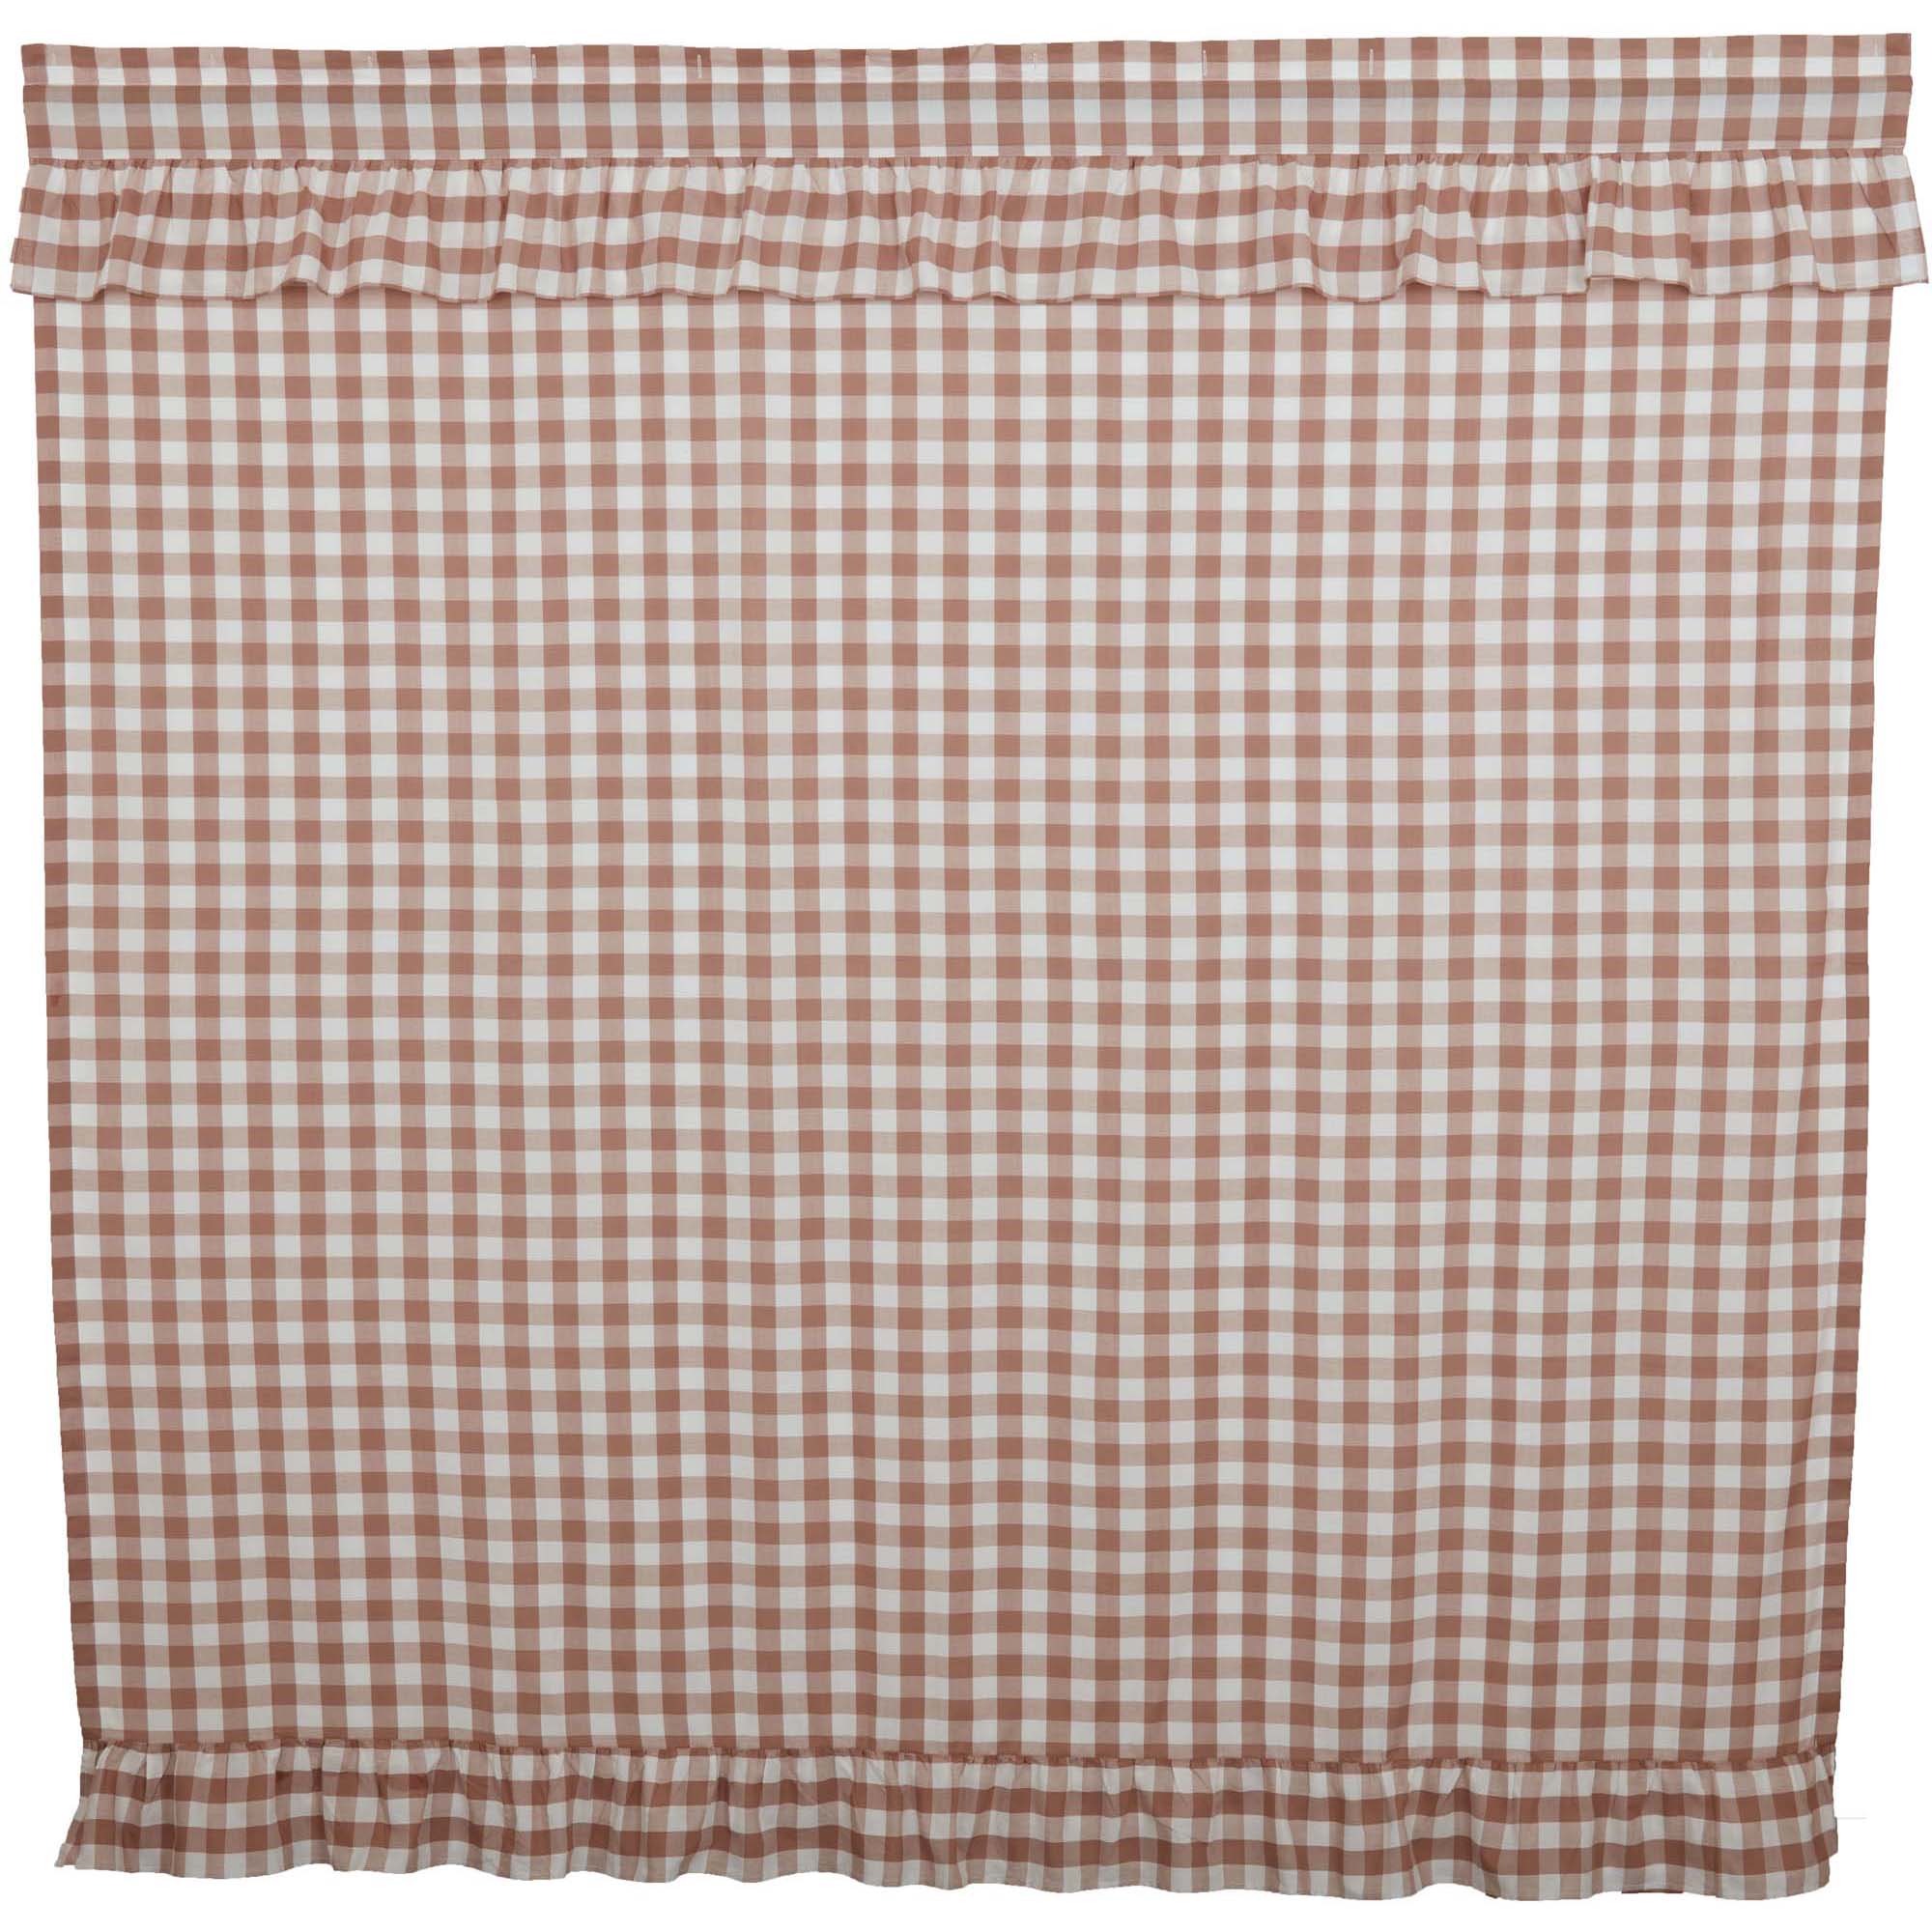 Annie Buffalo Portabella Check Ruffled Shower Curtain 72x72 VHC Brands